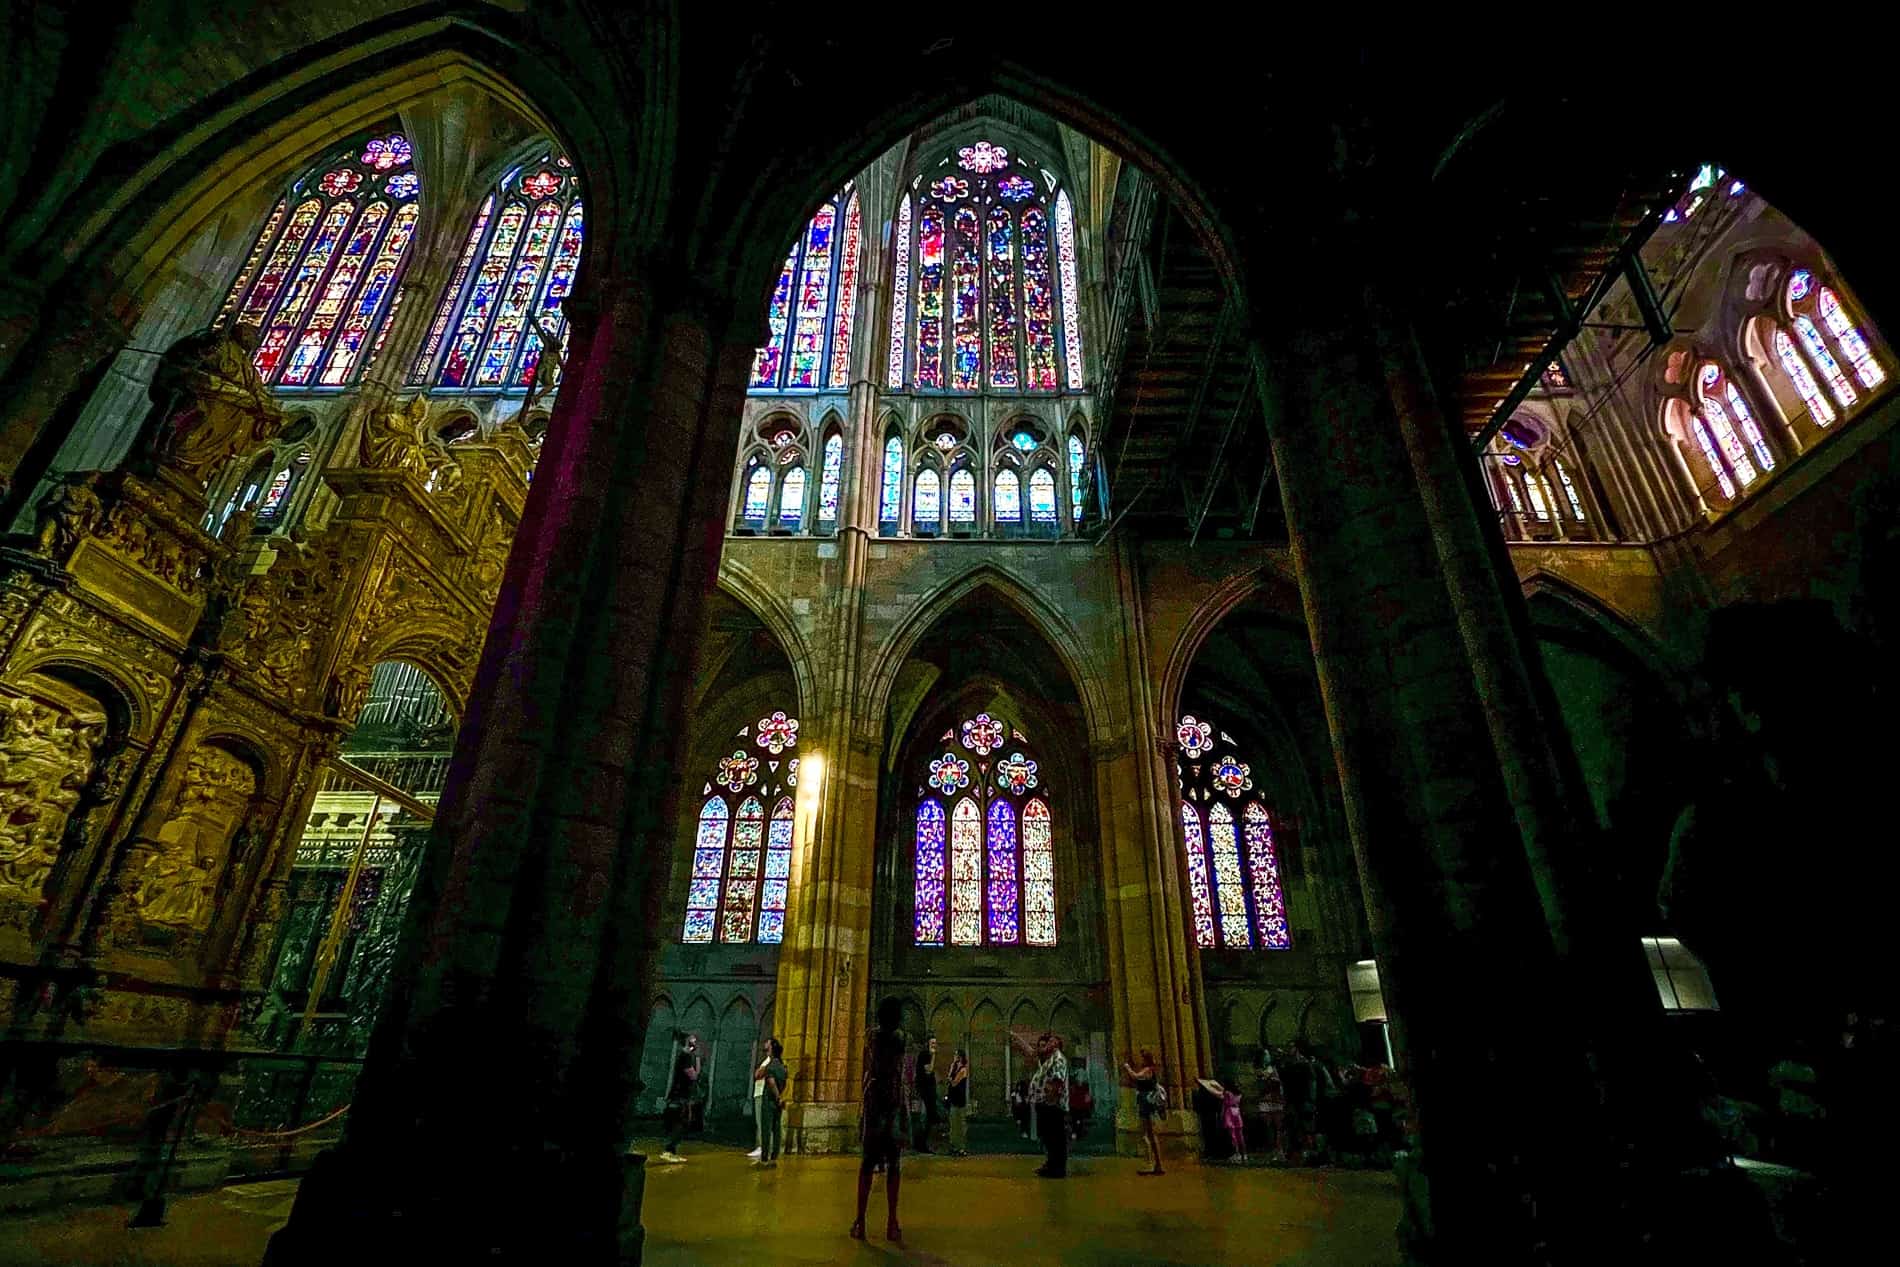 Una vista desde detrás de un arco de arcada de las vidrieras multicolores de la Catedral de León.